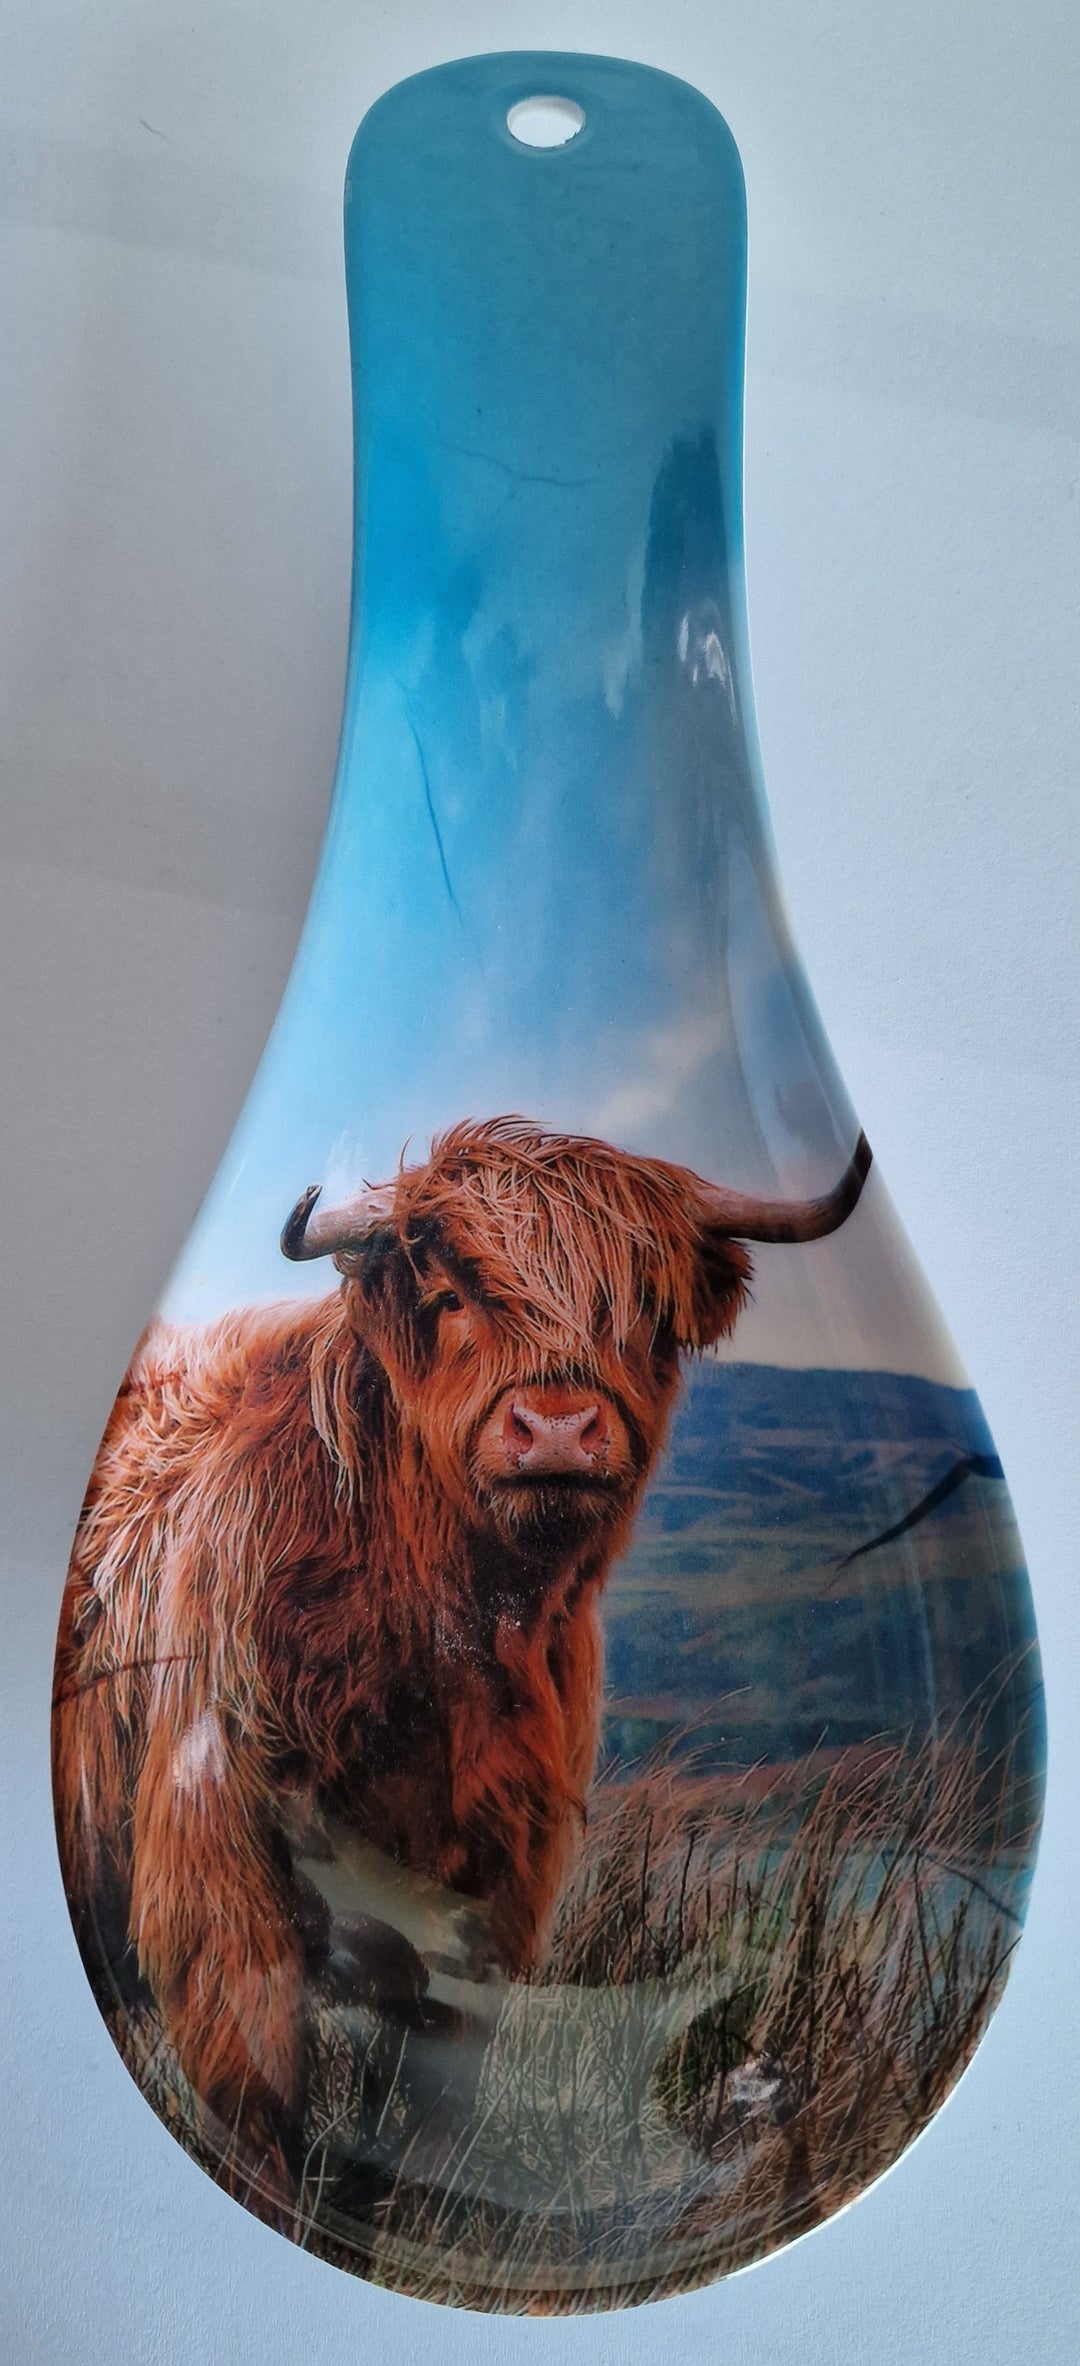 Löffel- Ablage ( Spoon-Rest) , Kunststoff, mit Motiv "Highland Cow"